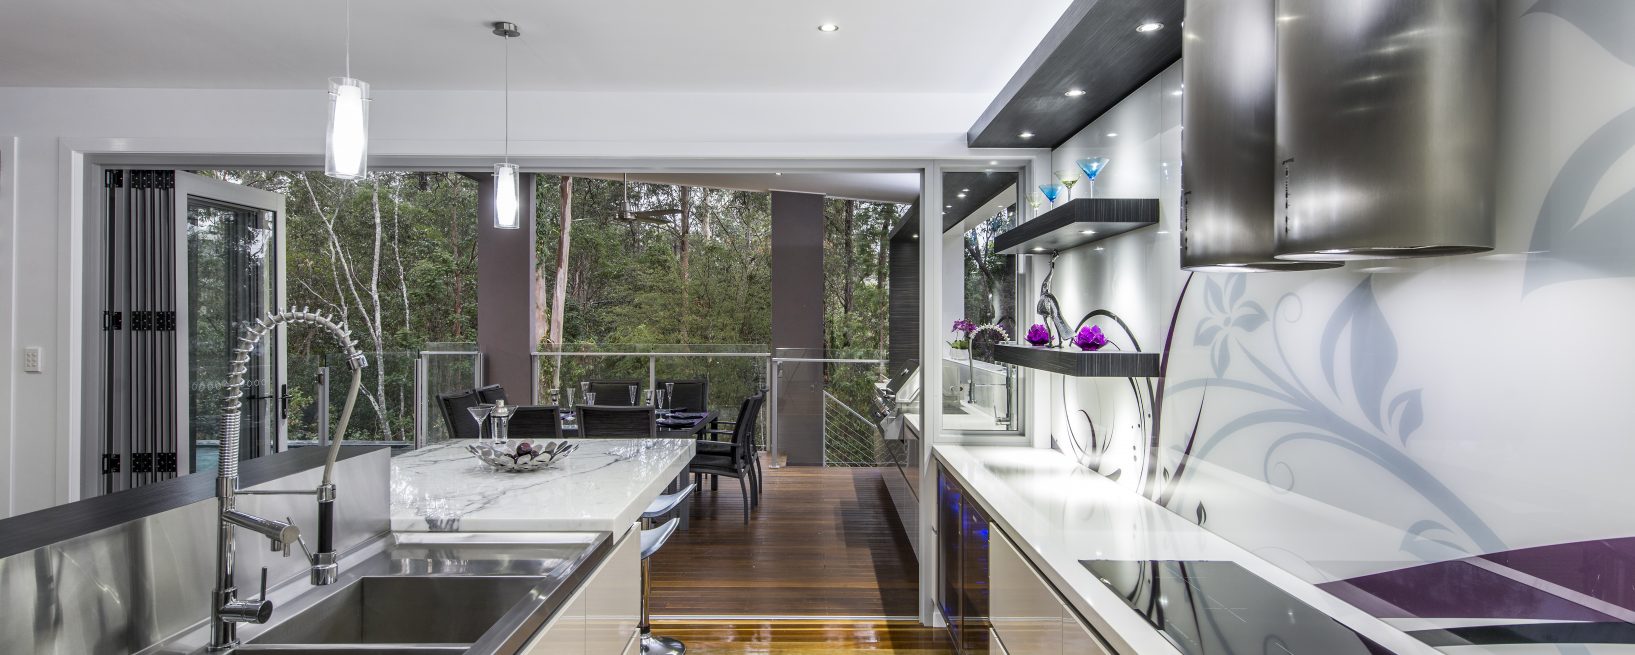 brisbane modern kitchen design